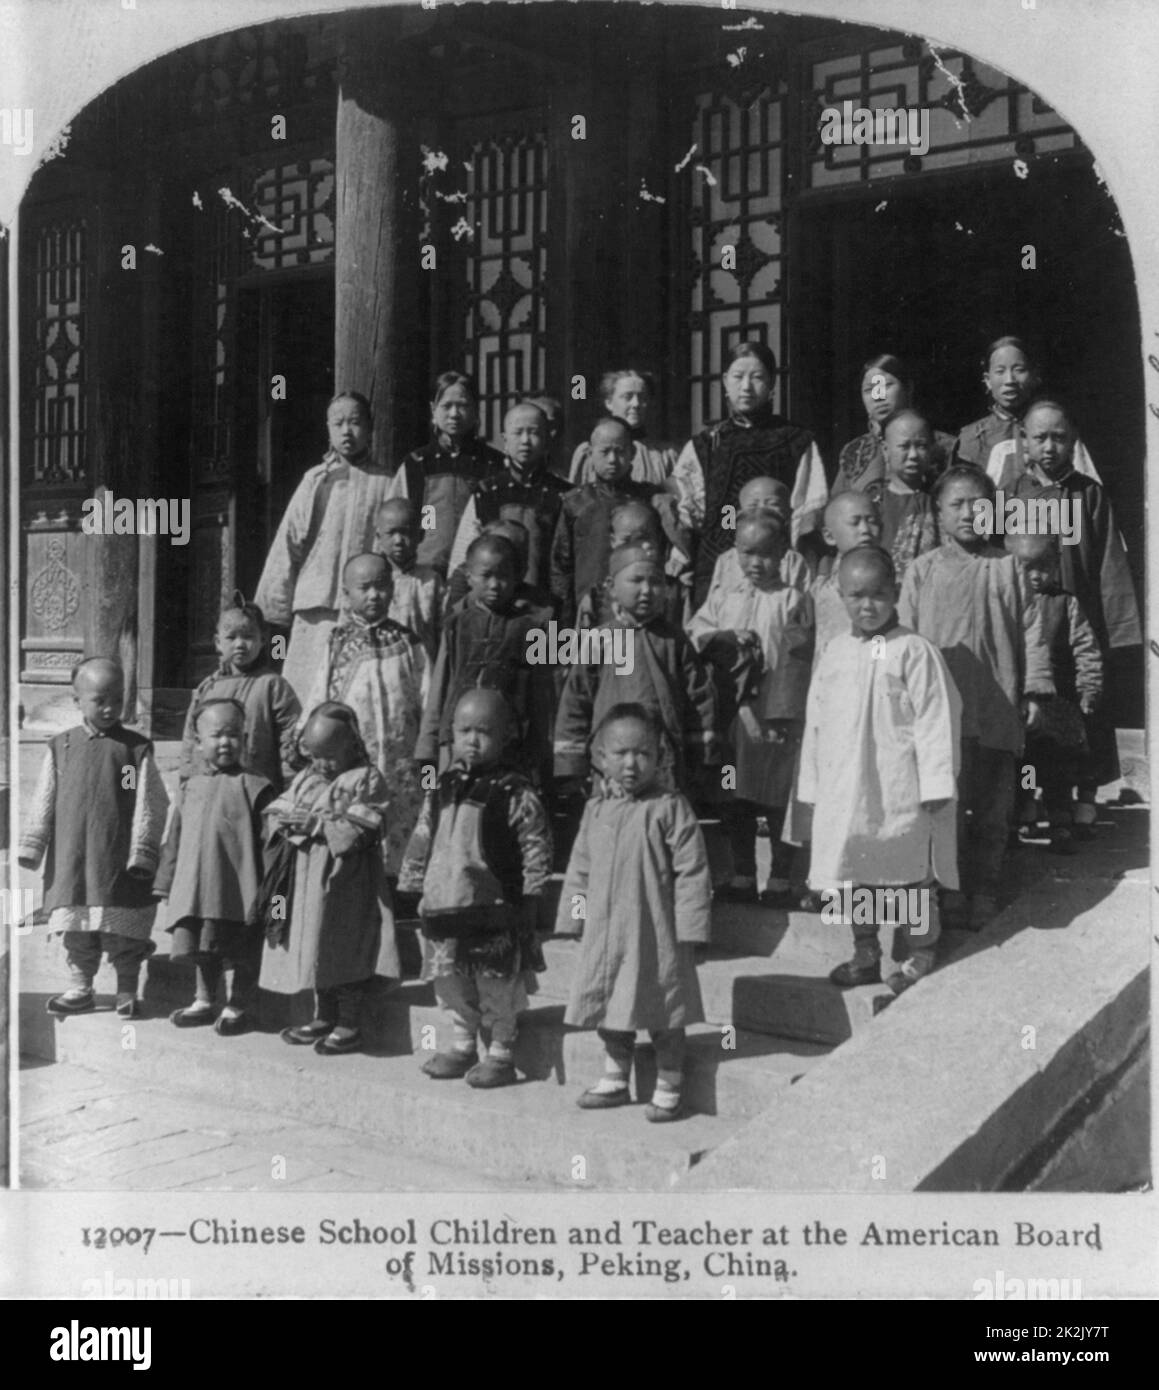 Chinesische Schule Kinder und Lehrer [stehend auf Schritte] an der Amerikanischen Vorstands der Missionen, Peking, China Veröffentlicht: c 1900. fotoabzug oder Stereo-card/Stereograph. Stockfoto